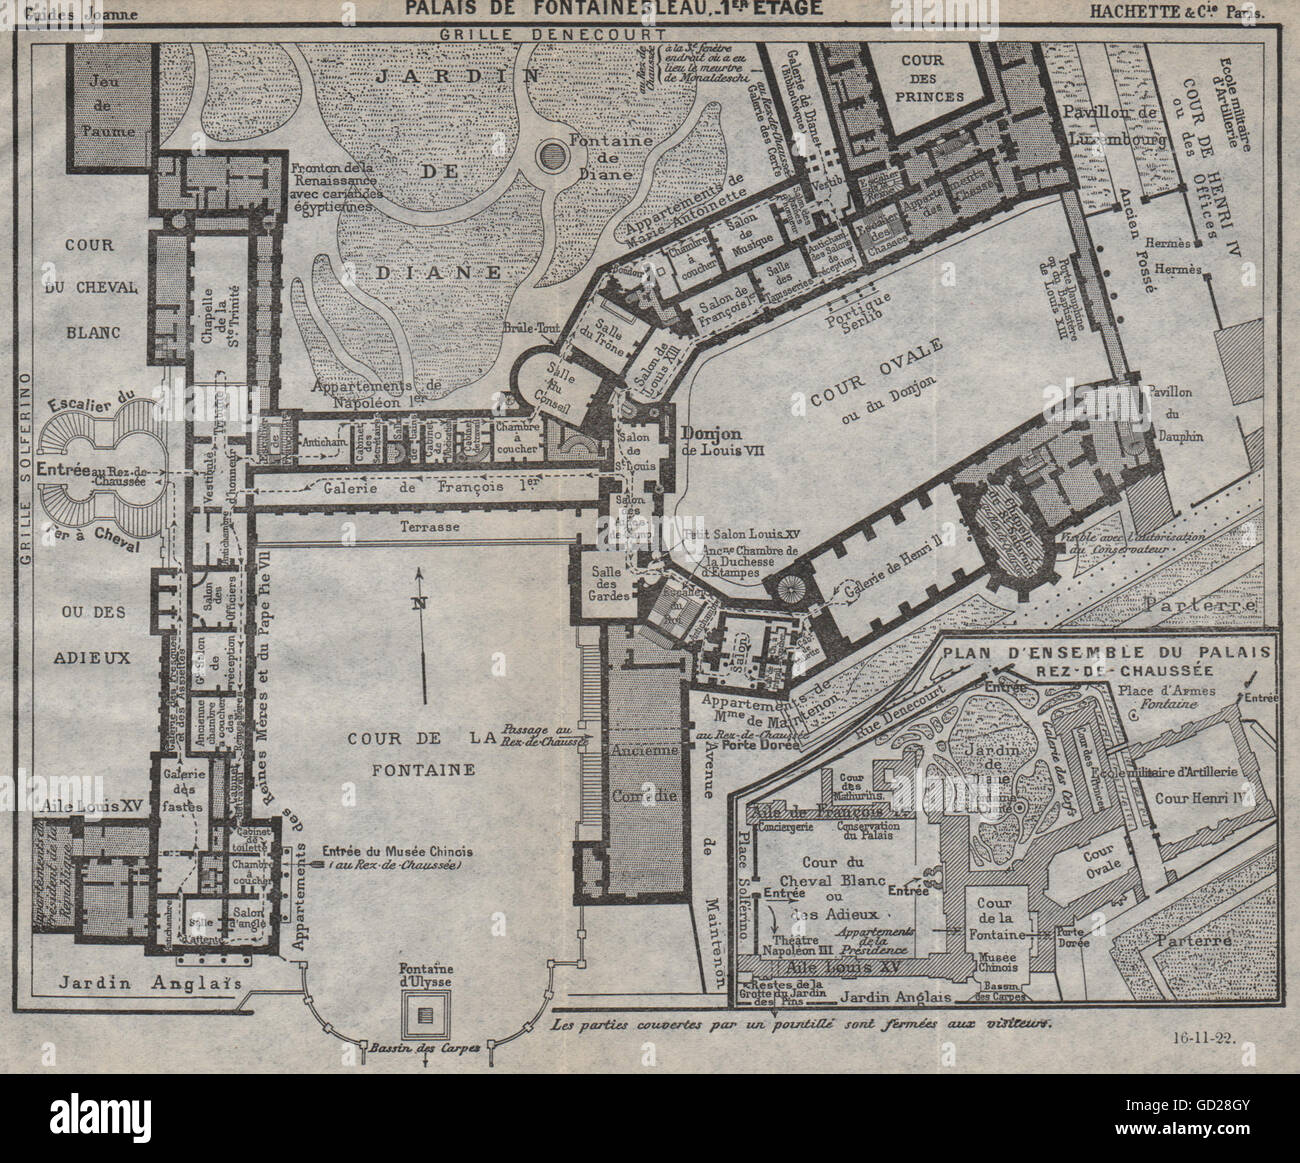 PALAIS DE FONTAINEBLEAU. 1er étage. 1st floor. Vintage map. Seine-et-Marne  1922 Stock Photo - Alamy